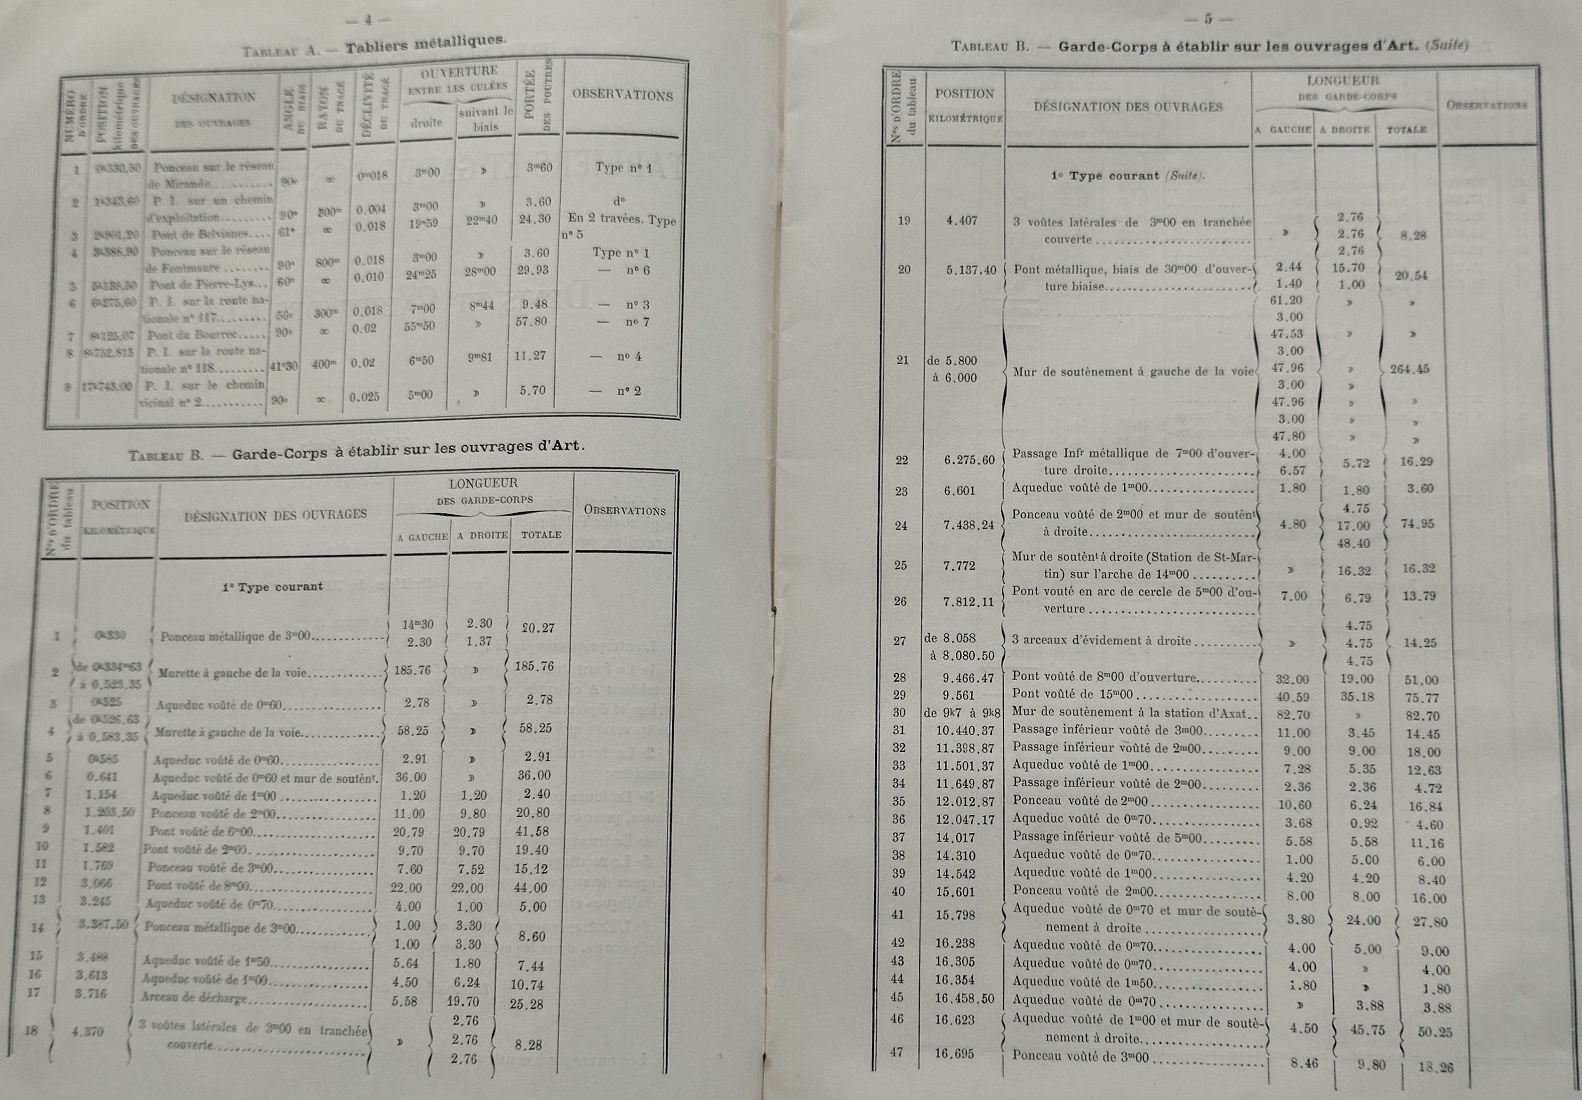 Devis et cahier des charges pour les tabliers et gardes-corps des grands ouvrages métaliques du 14 mai 1901 - 6